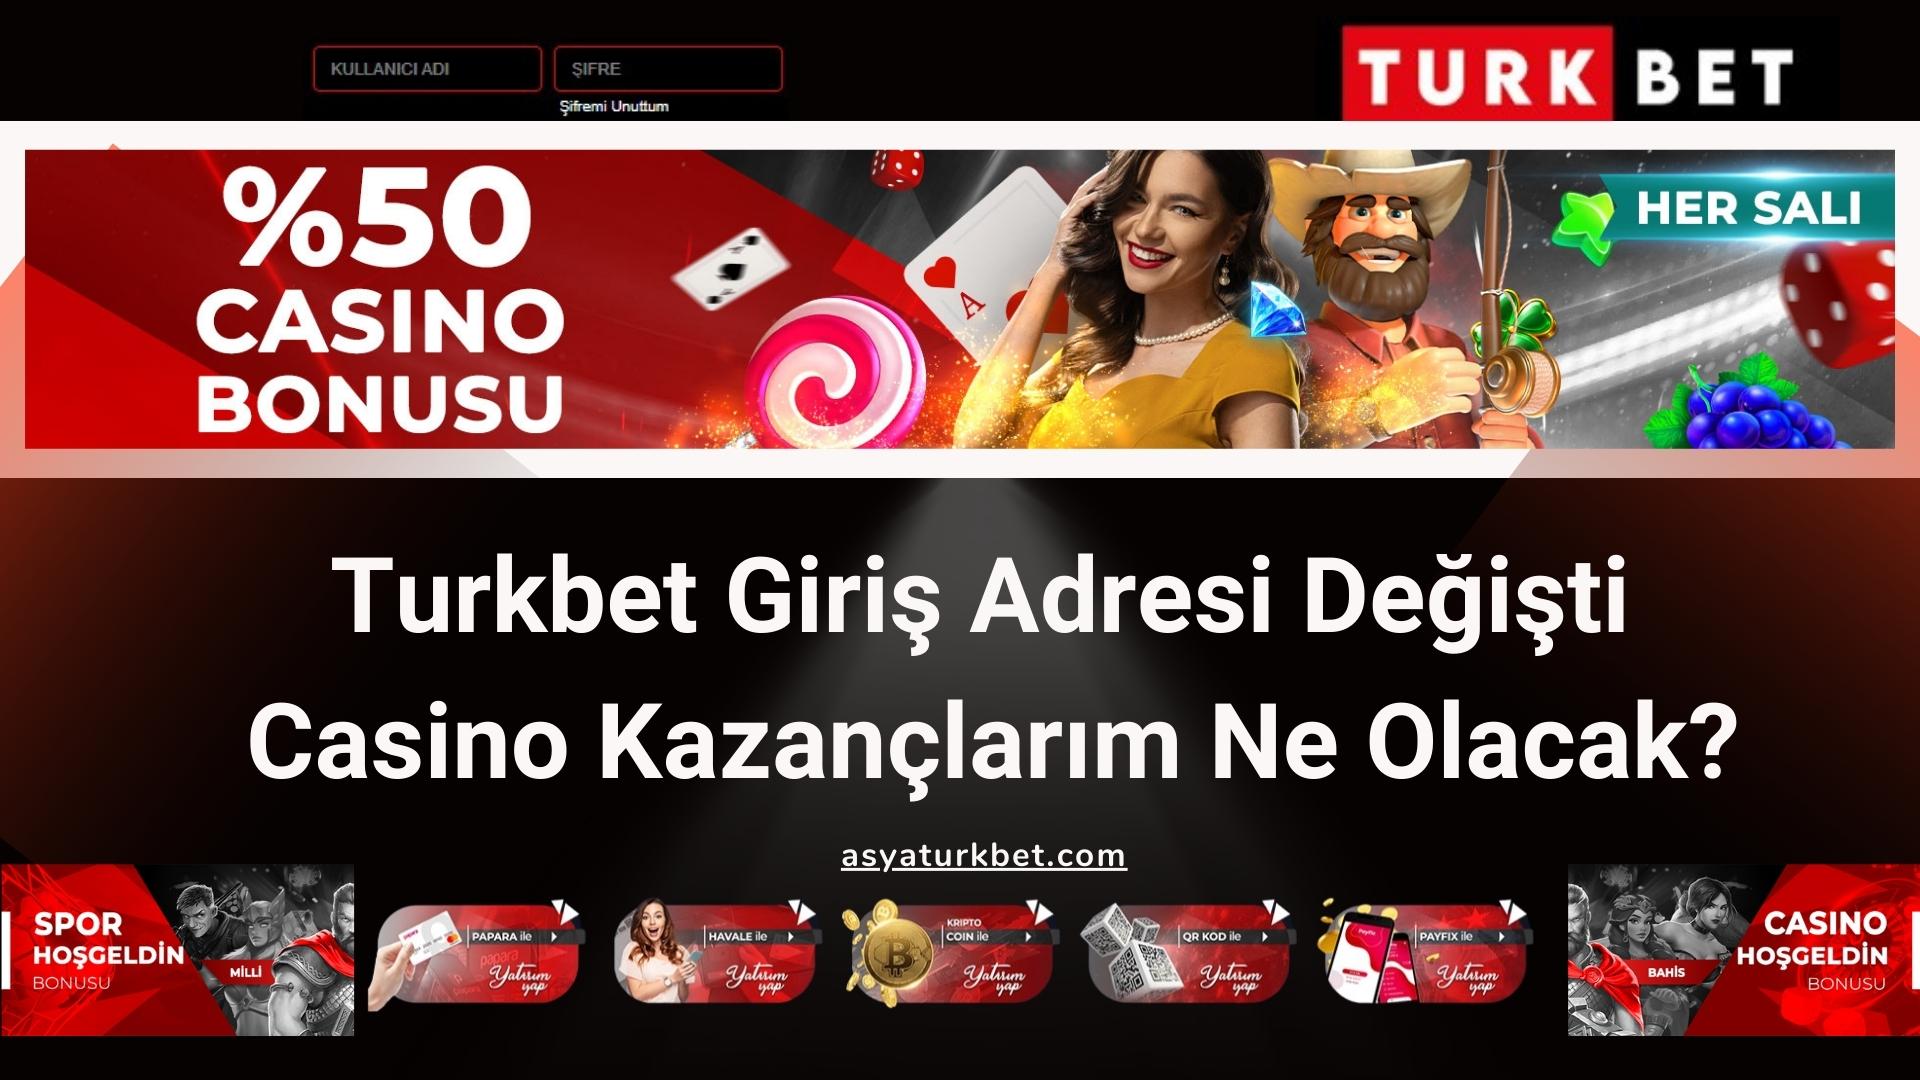 Turkbet Giriş Adresi Değişti Casino Kazançlarım Ne Olacak